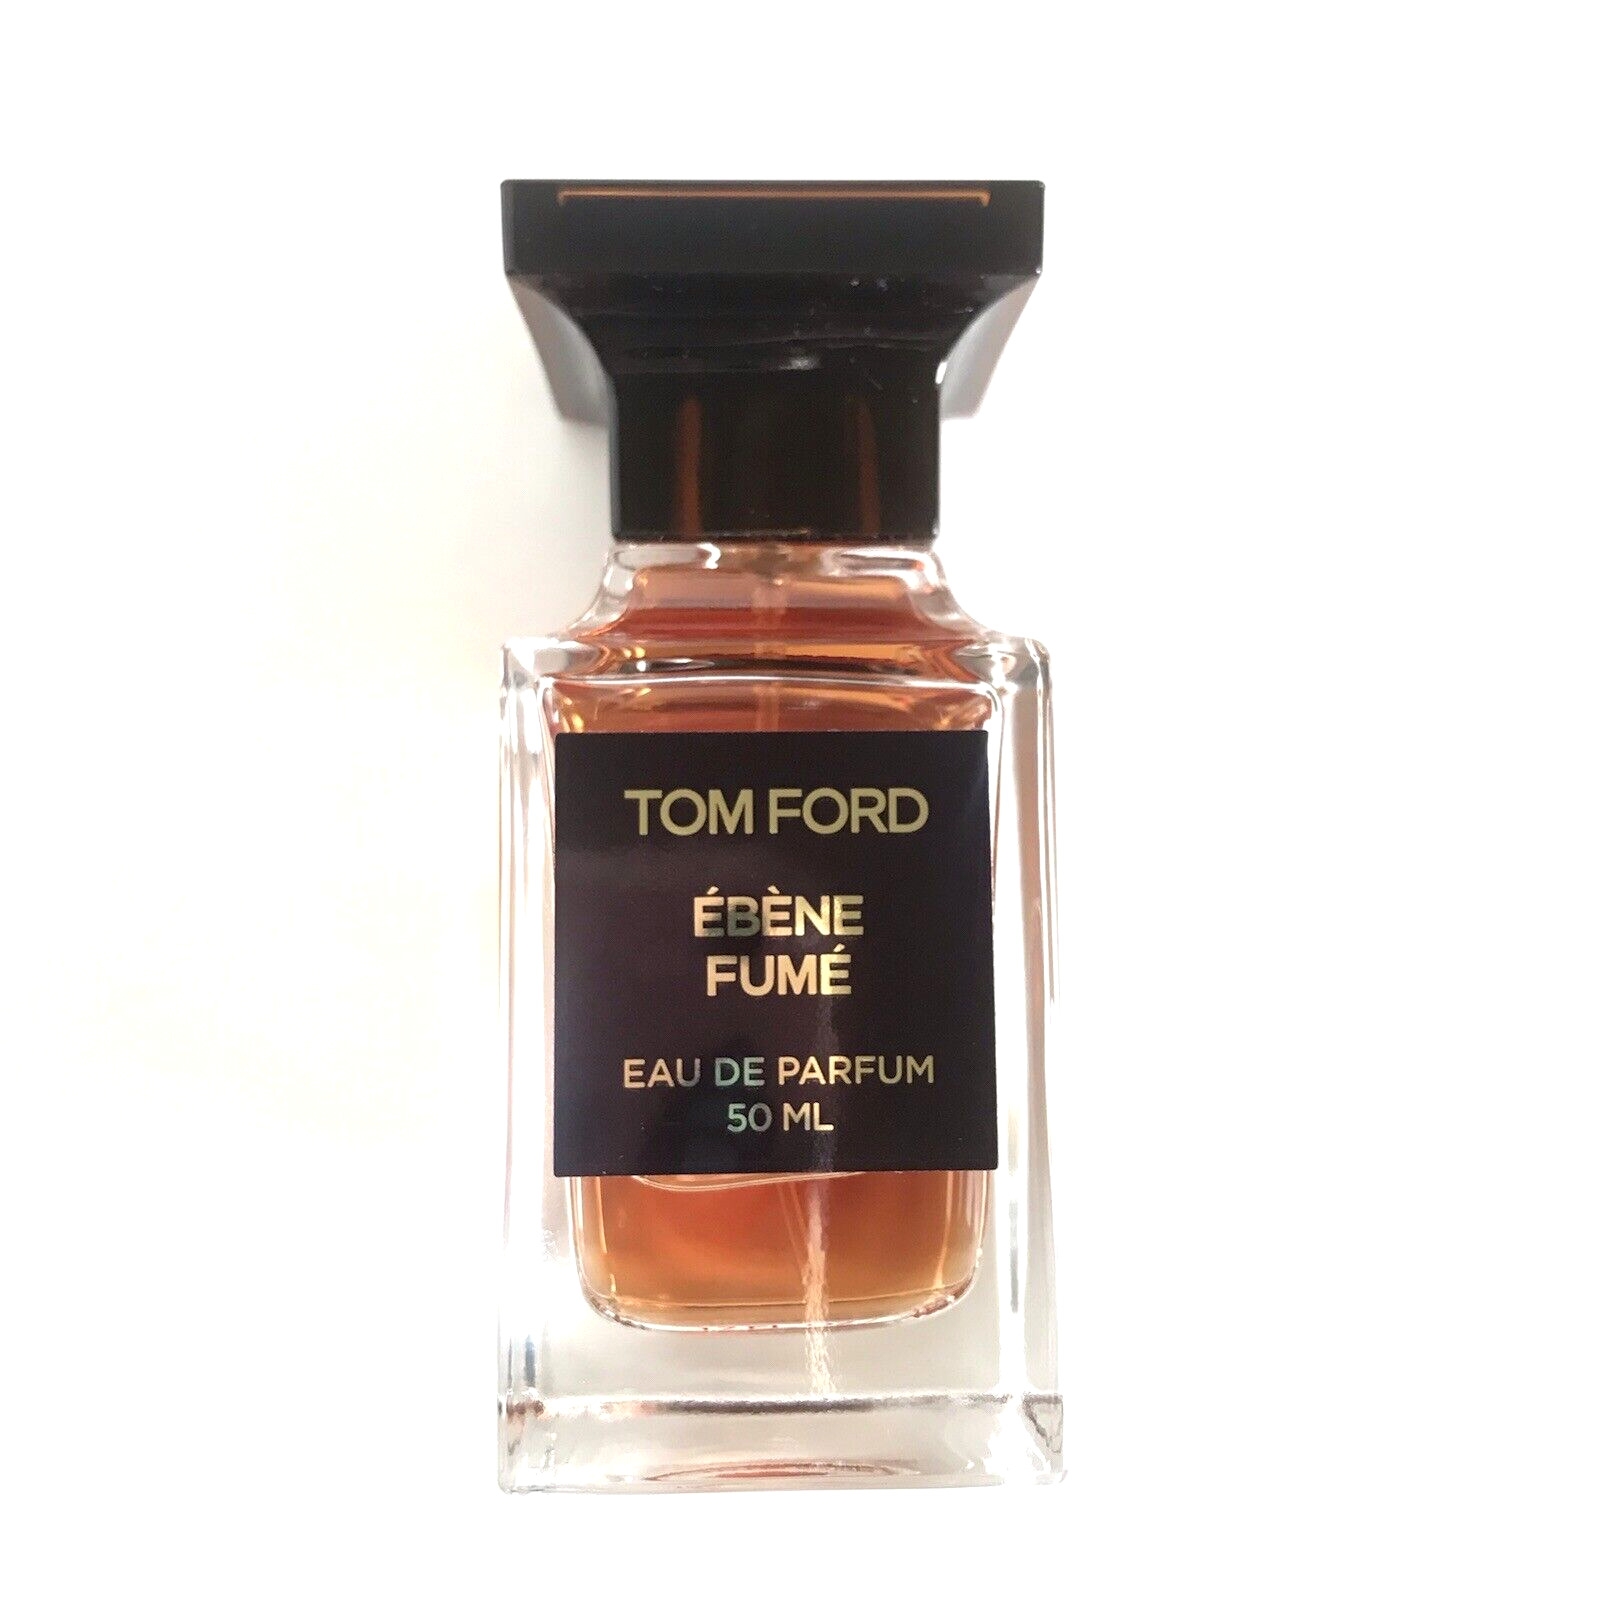 TOM FORD Ebene Fume Eau De Parfum Spray 1.7 oz Men or Women 💕 NEW no box $295